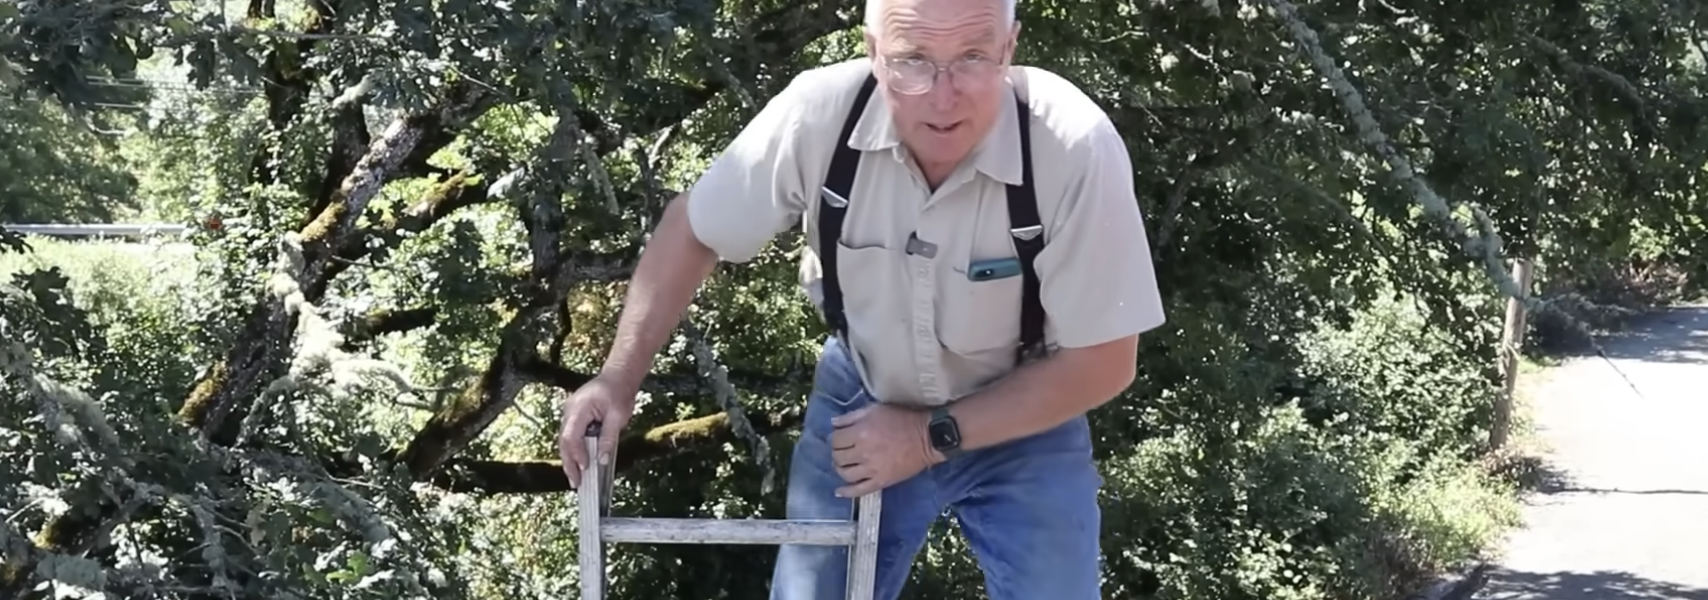 Πώς να ανεβείτε με ασφάλεια μια σκάλα